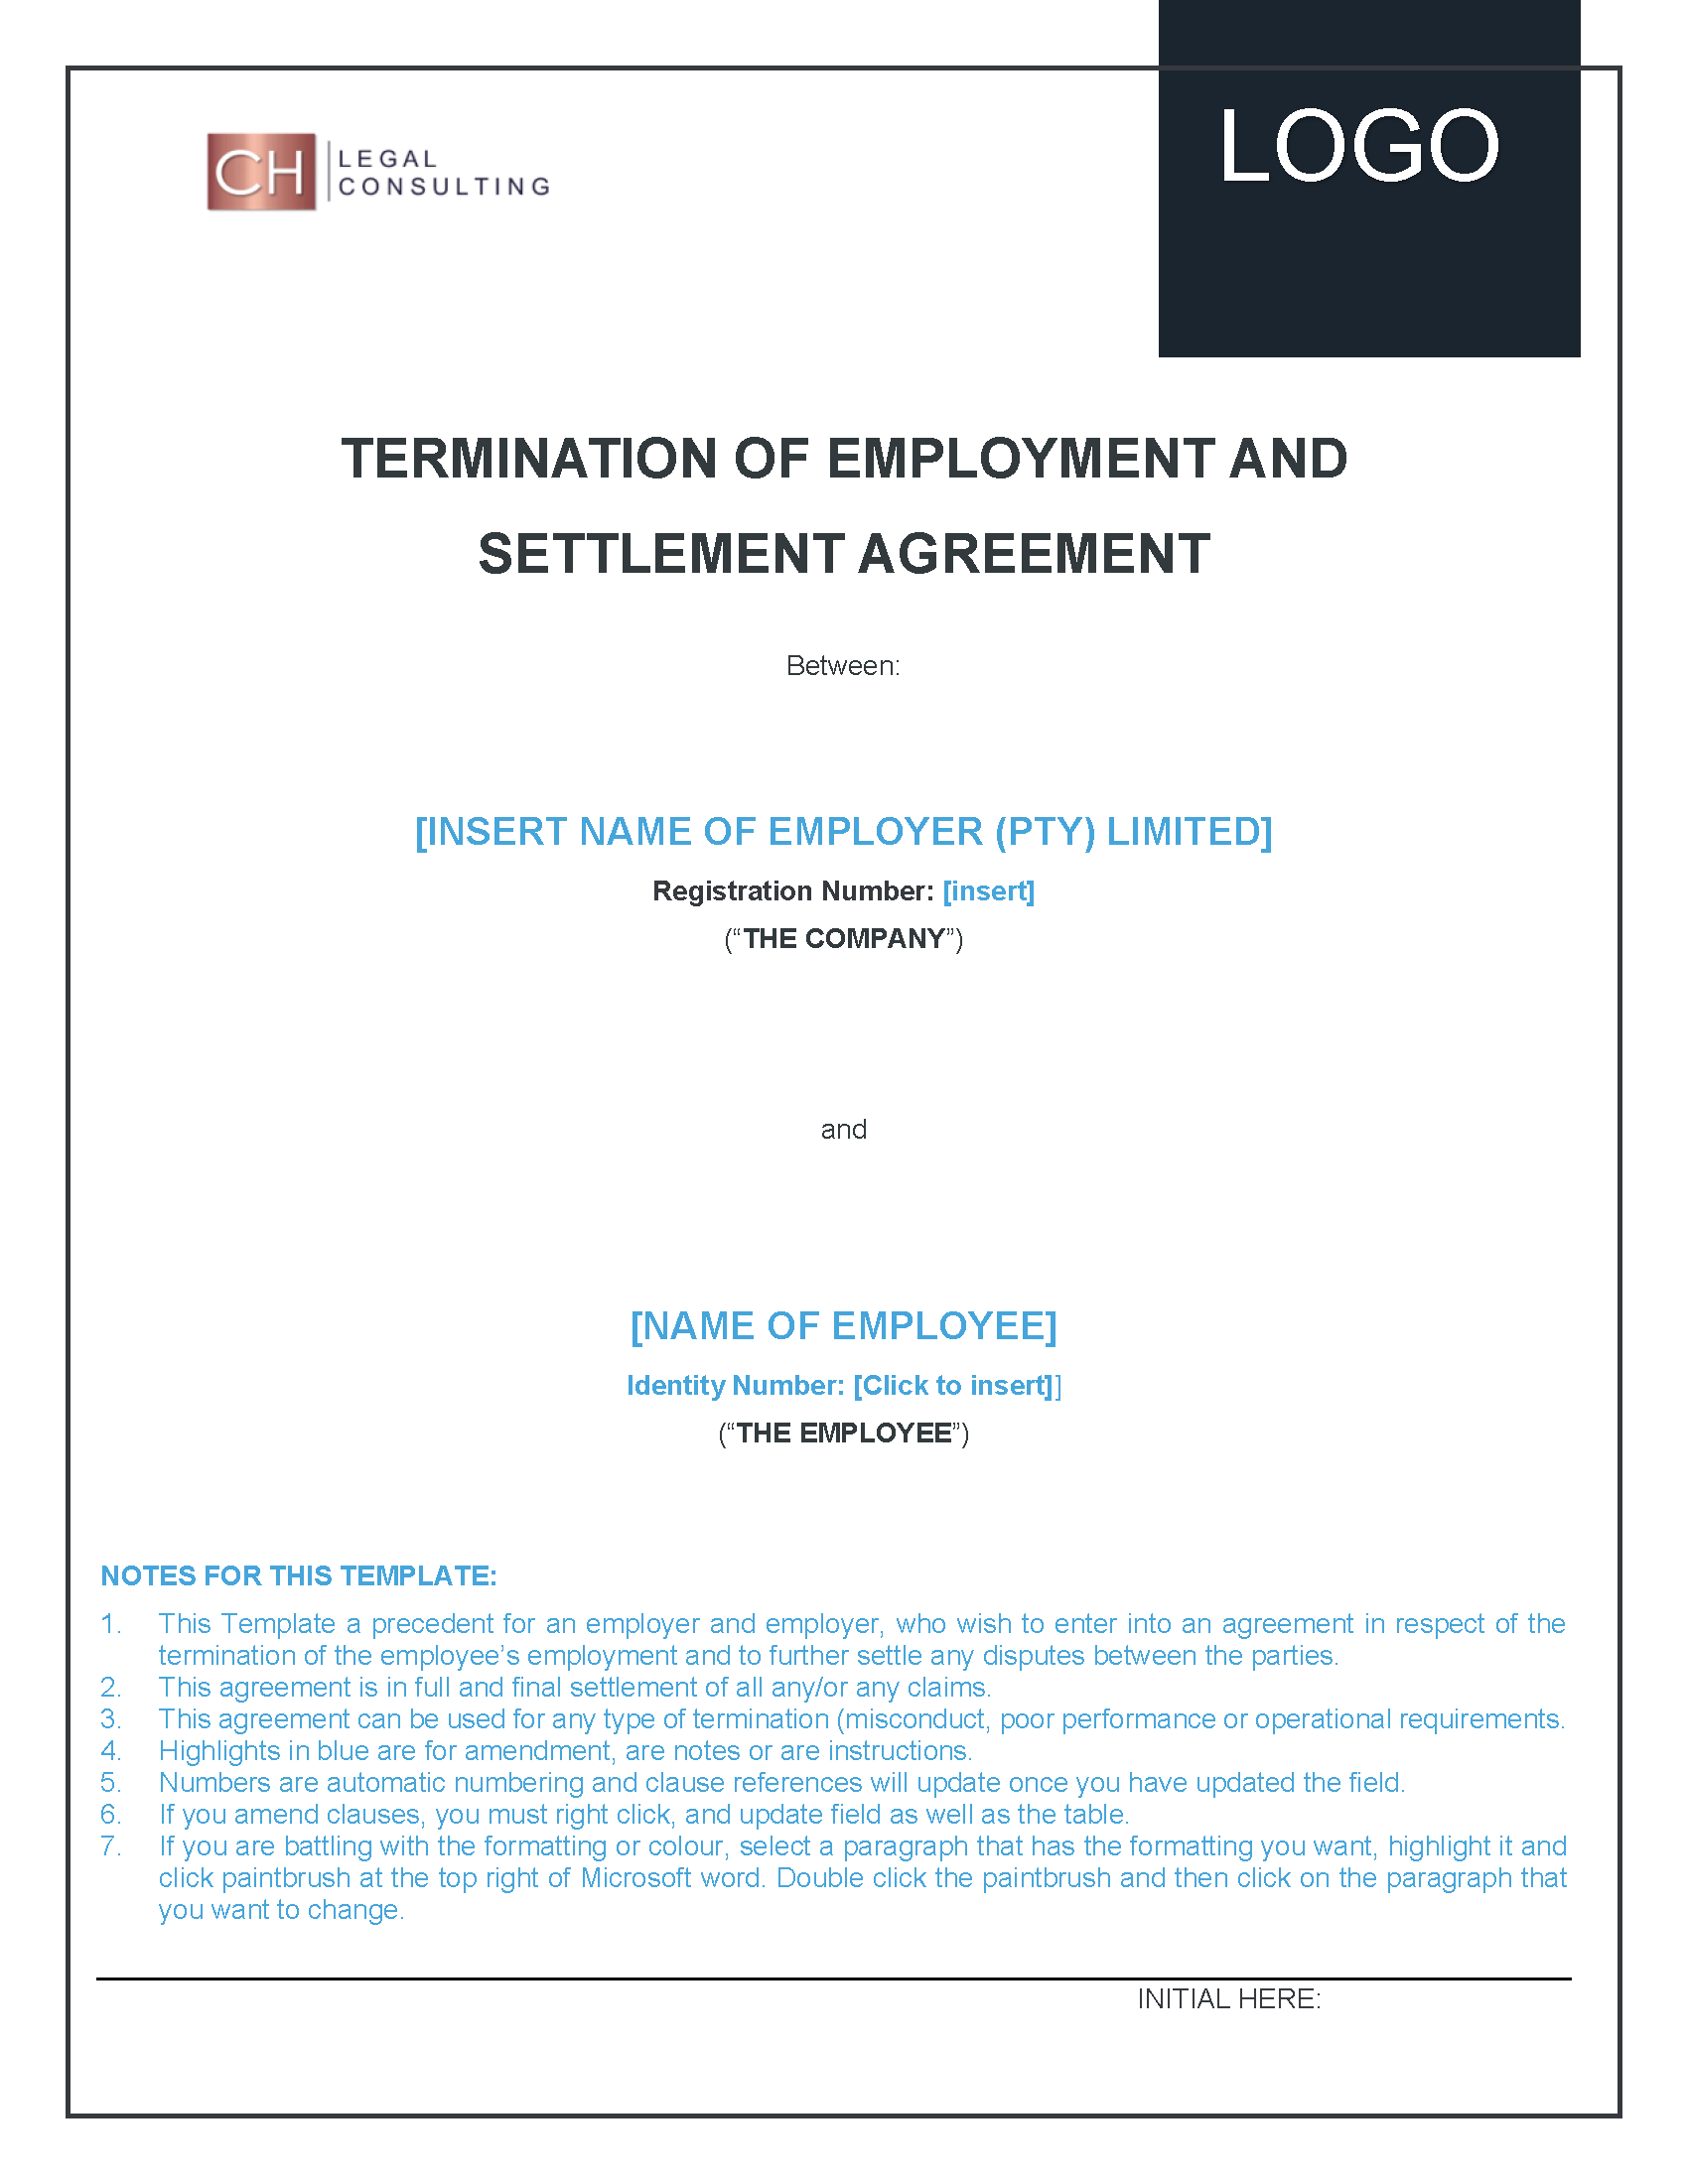 Employment Settlement Agreement Template Termination Of Employment Settlement Agreement